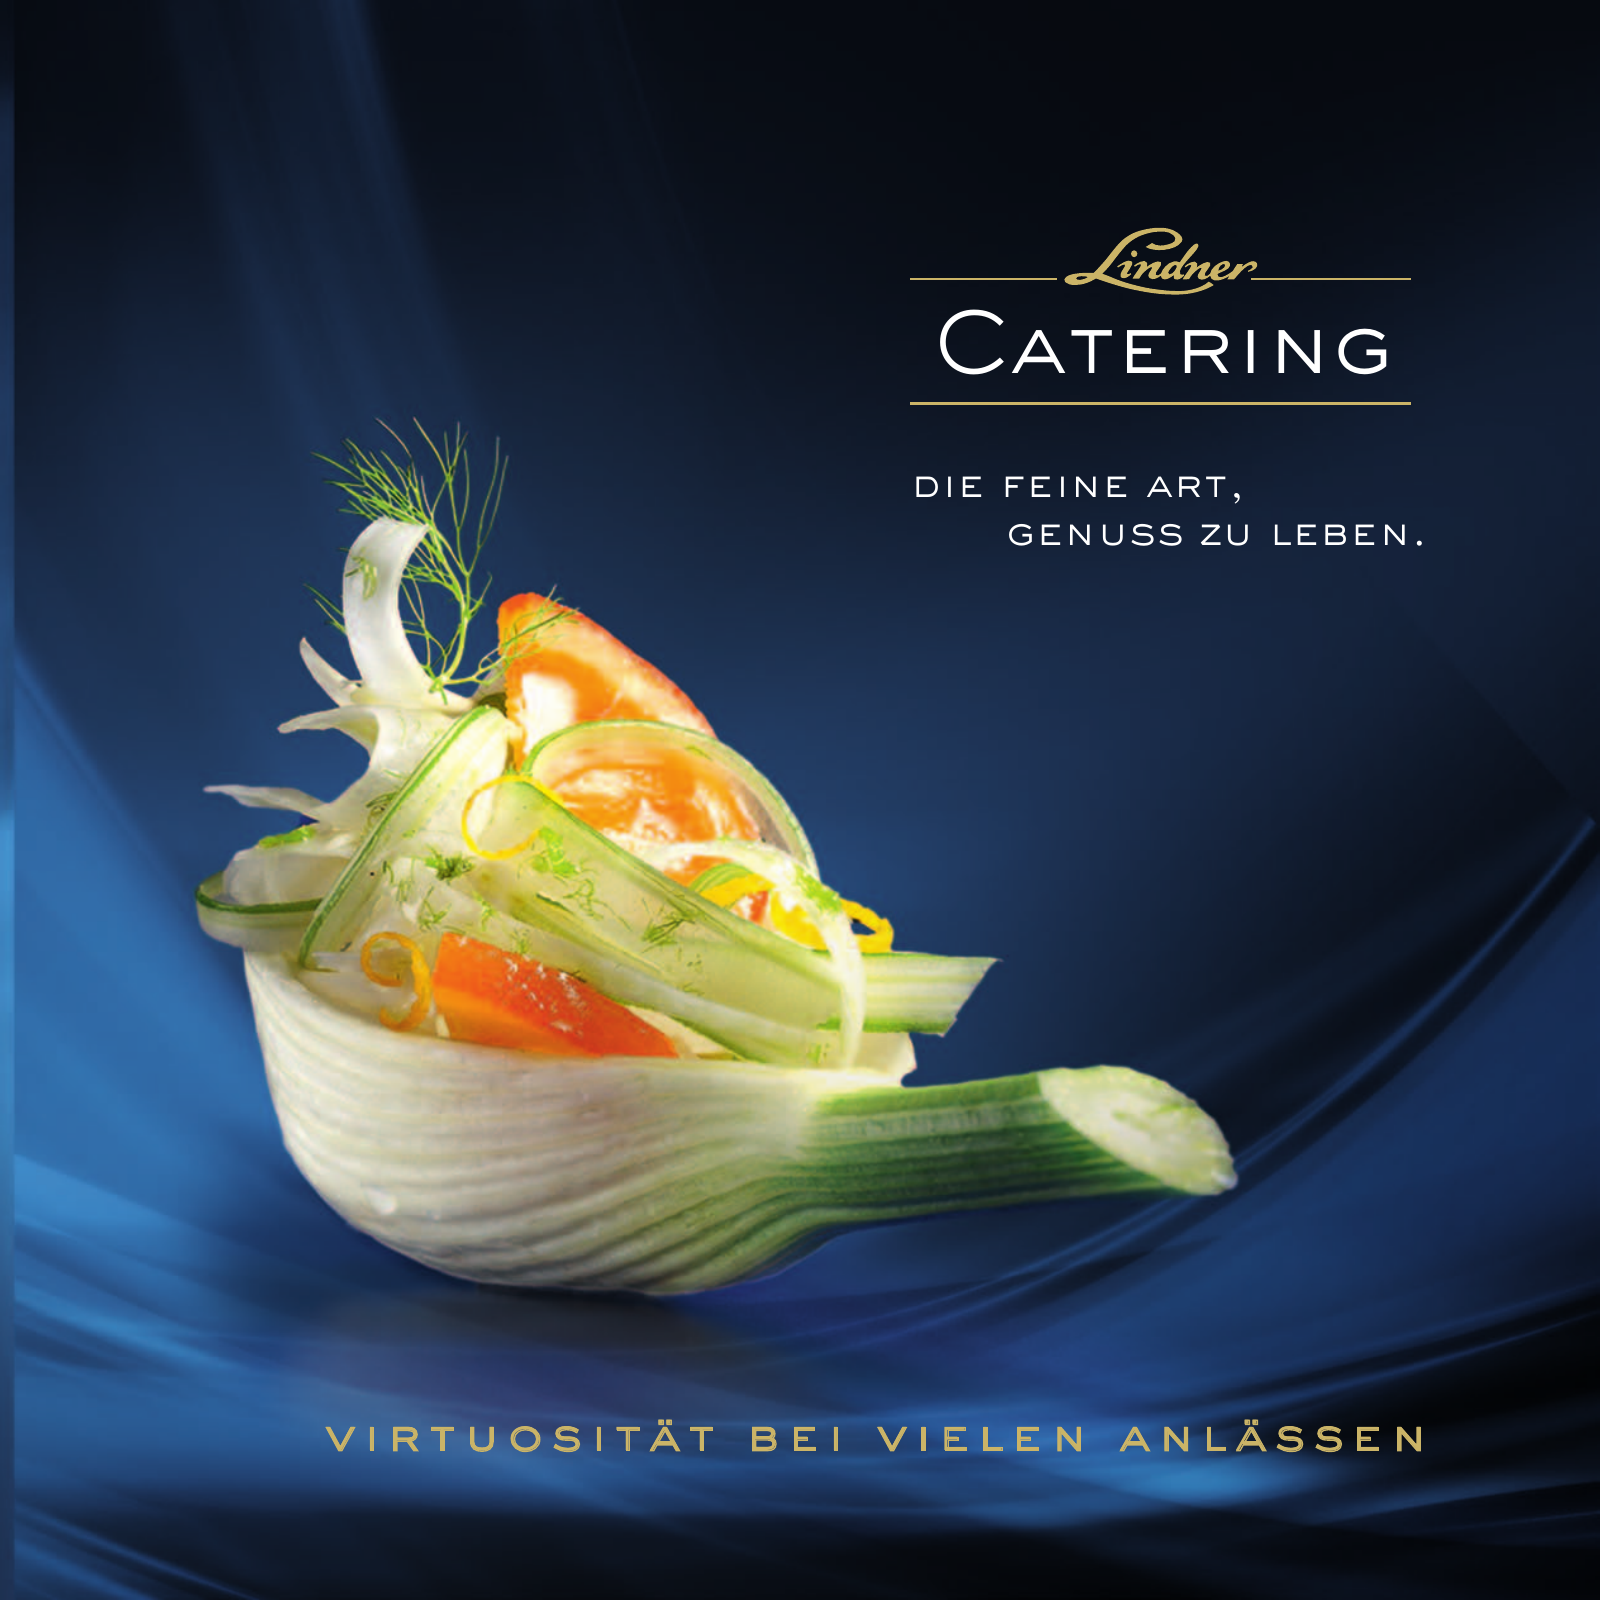 Vorschau LINDNER Catering-Katalog 2015/2016 Seite 1